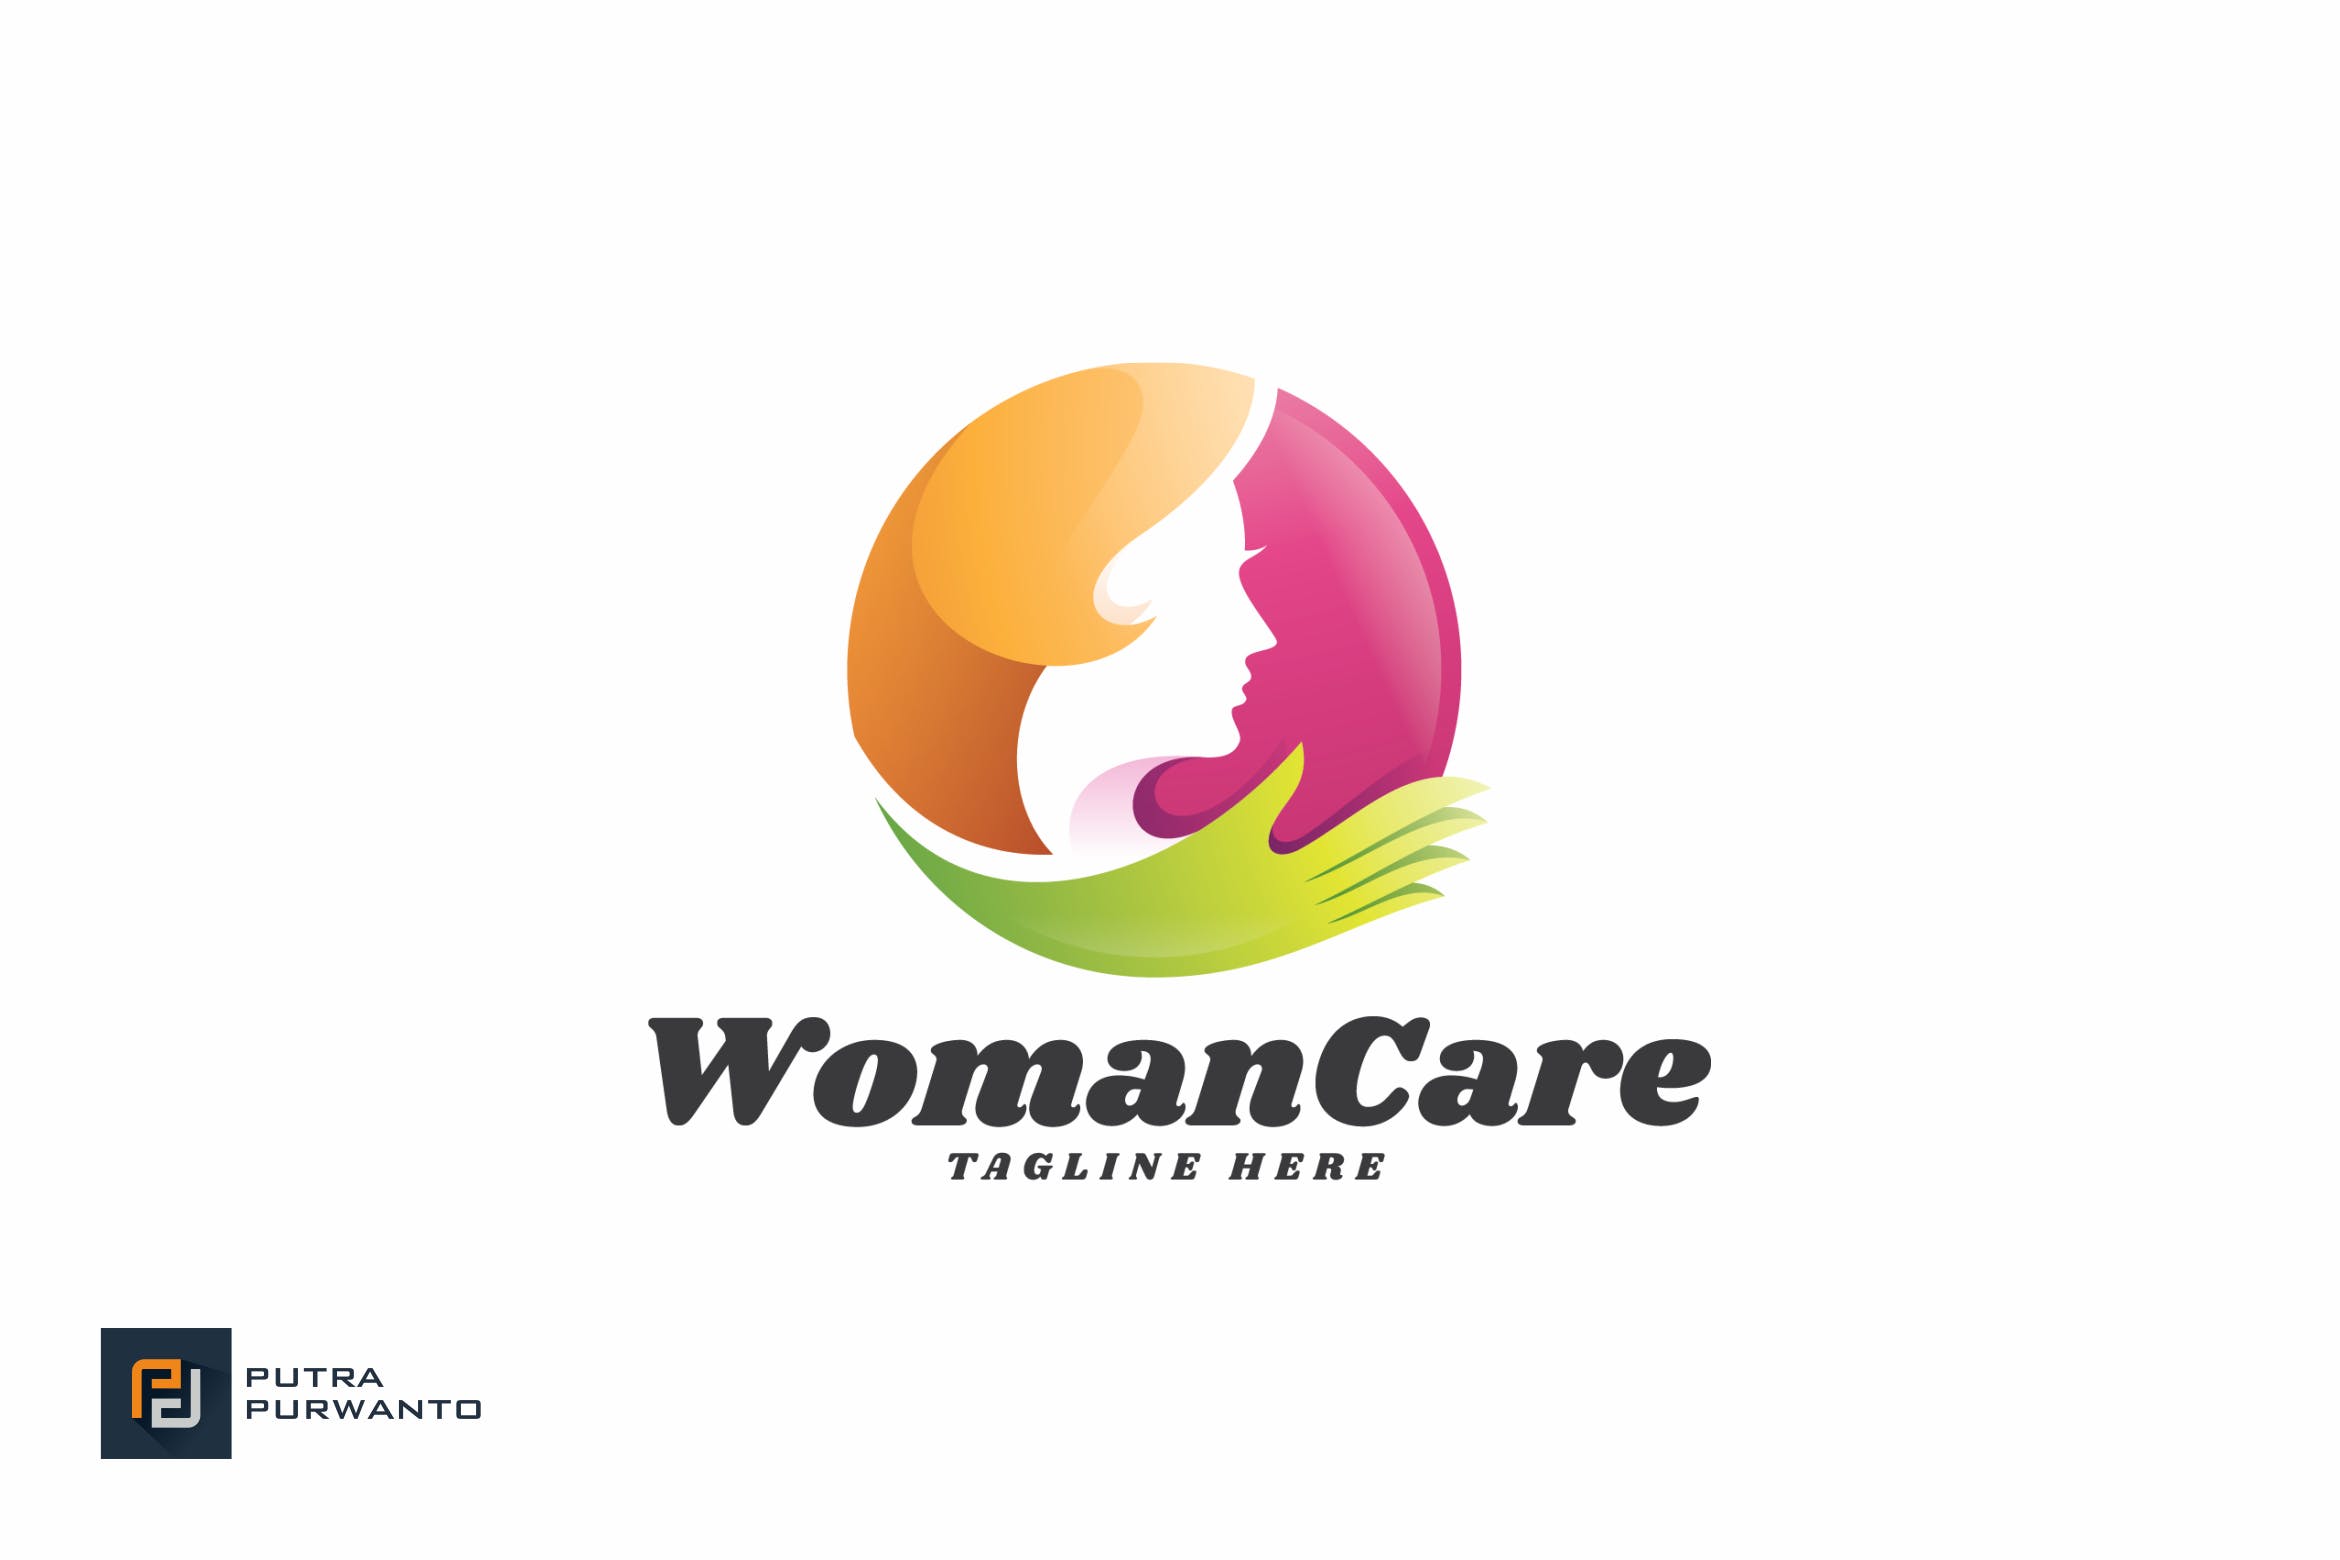 女性健康品牌Logo商标设计模板 Woman Care – Logo Template插图